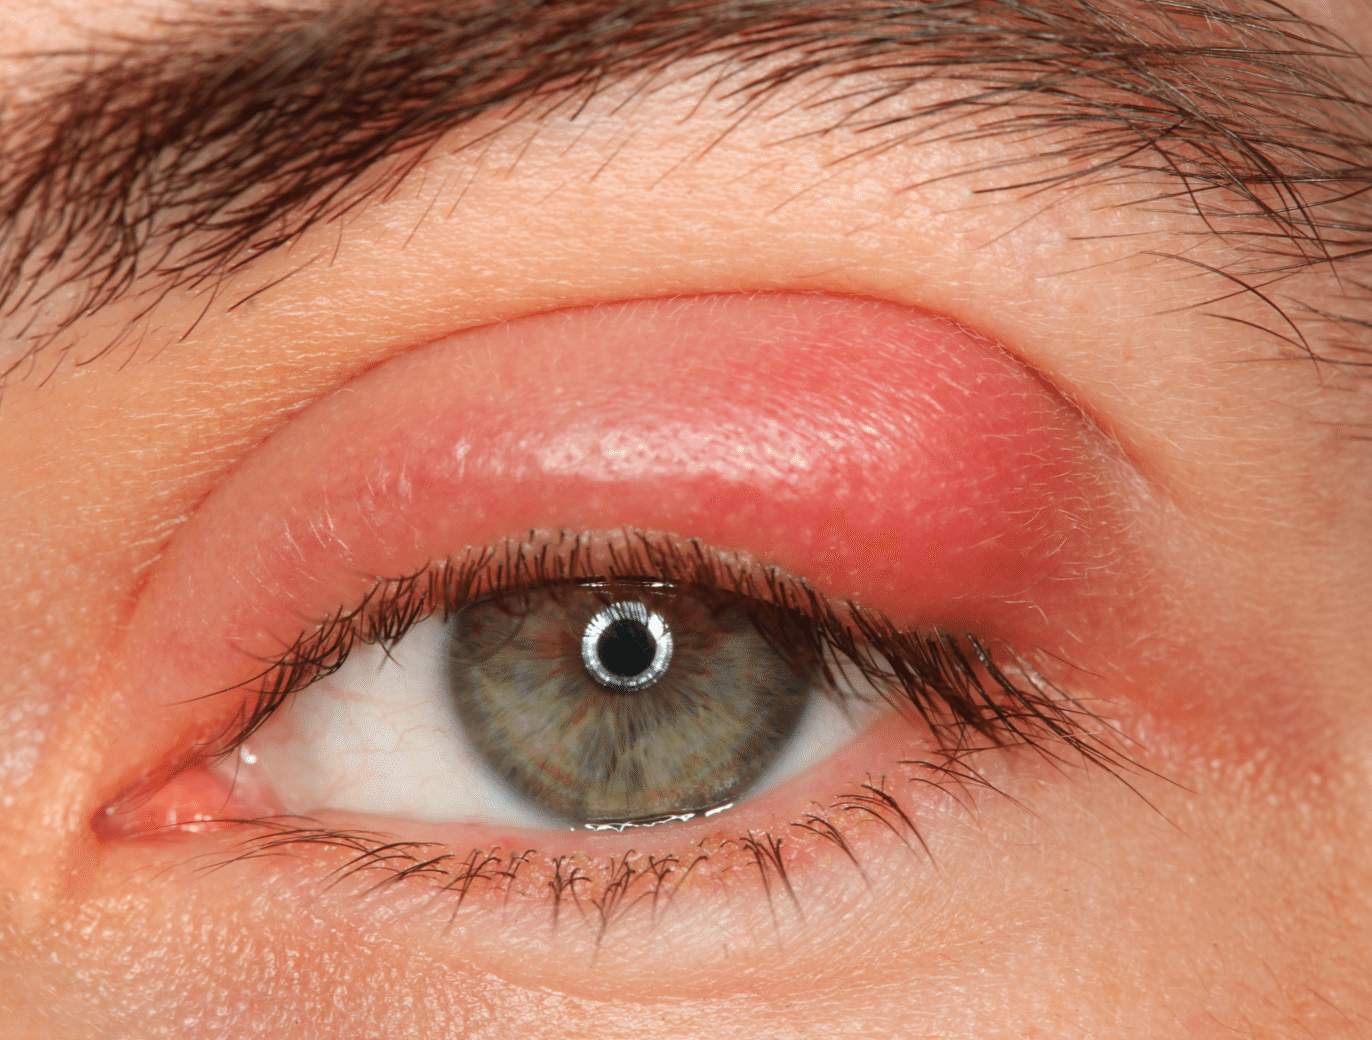 Герпес на глазах (офтальмогерпес): фото, лечение